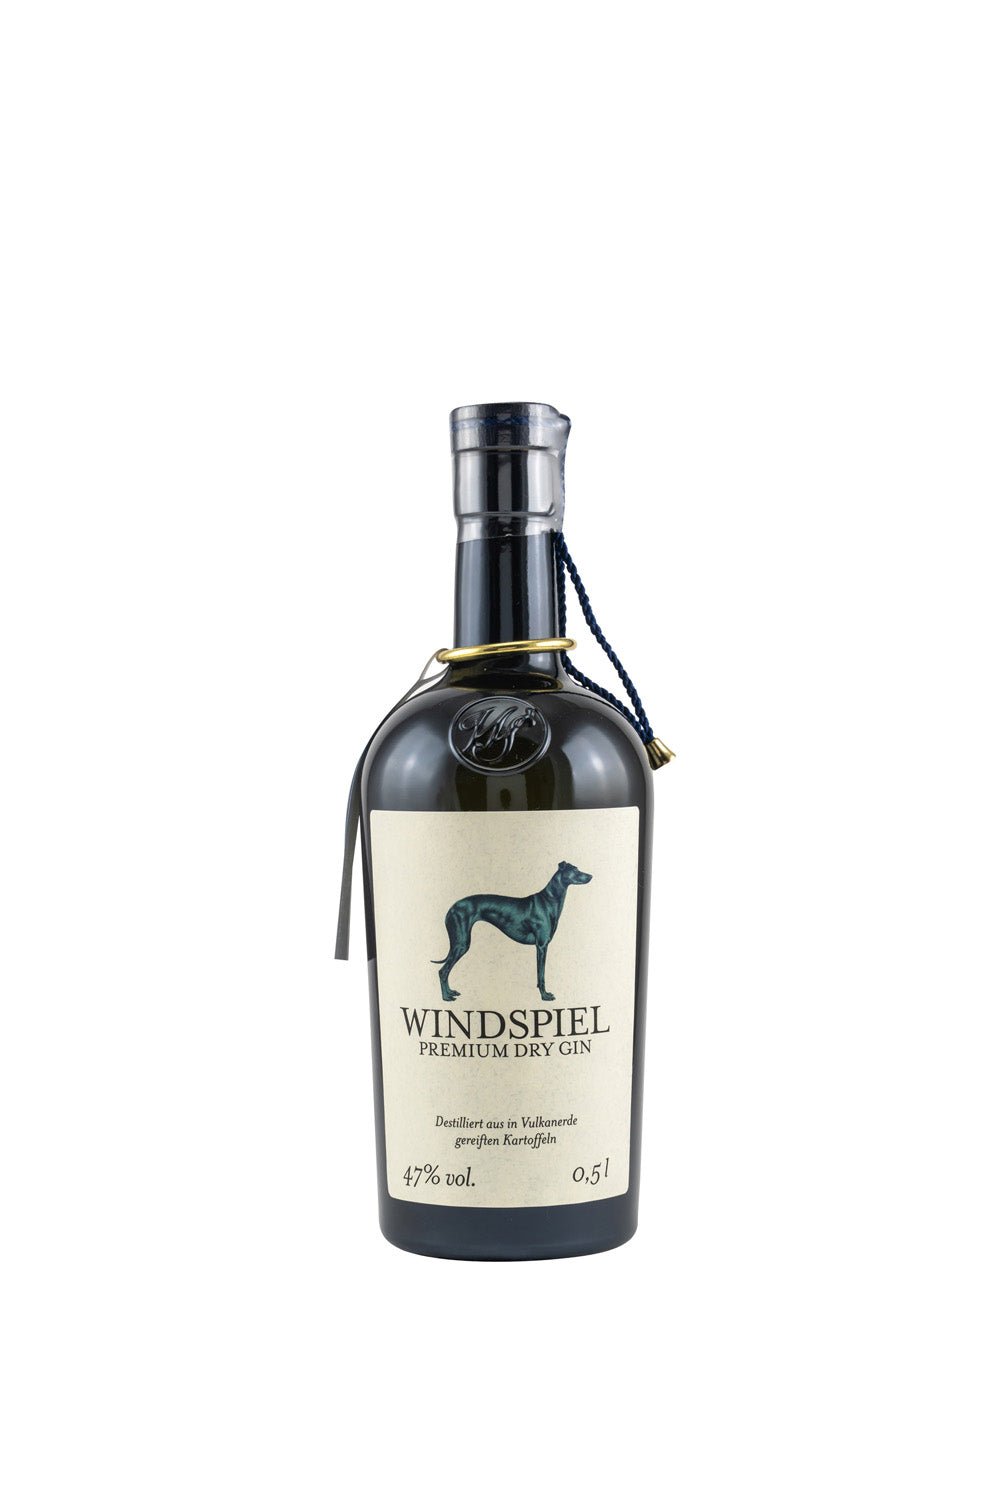 Windspiel Premium Dry Gin 47% vol. 500ml - Maltimore